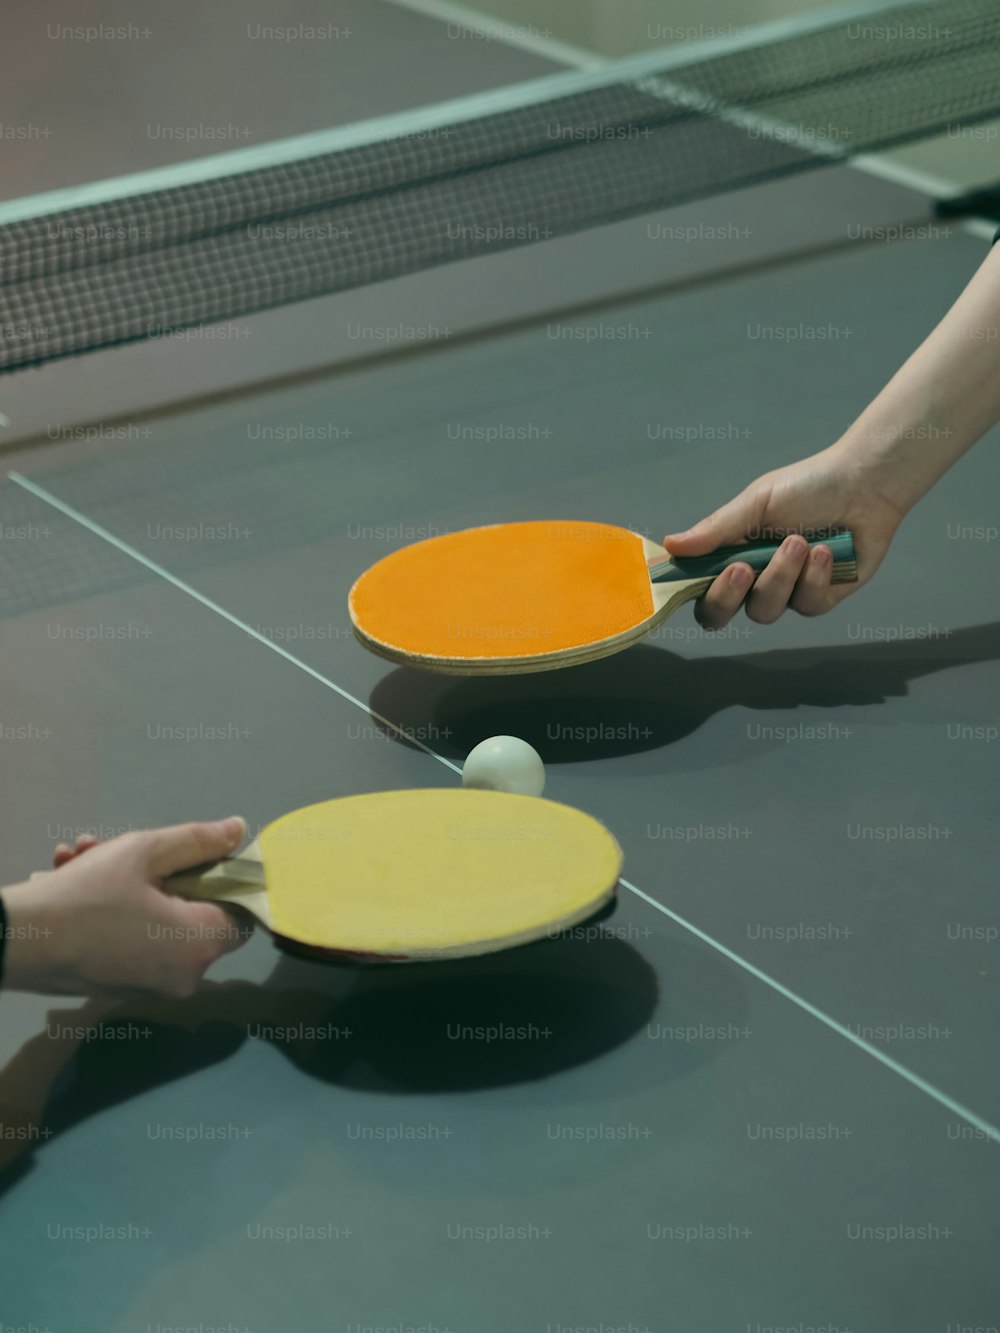 Dos personas están jugando ping pong en una mesa de ping pong